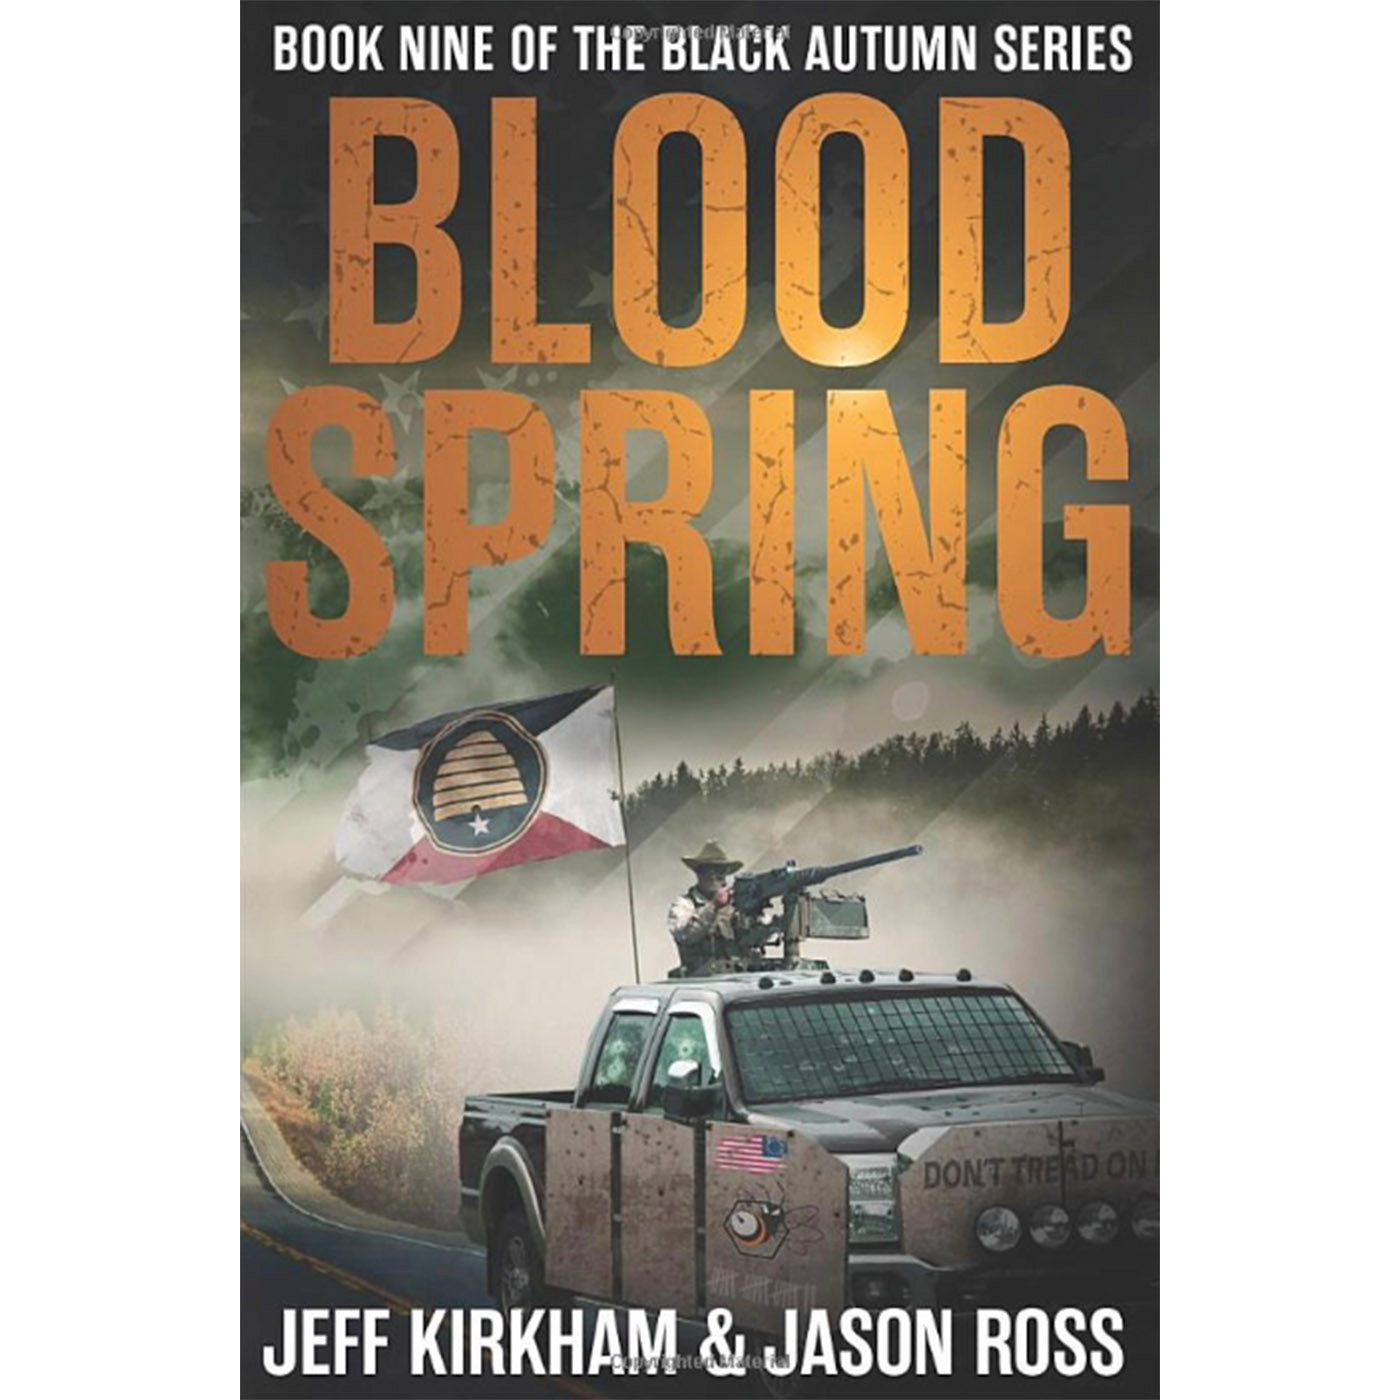 Blood Spring: A Black Autumn Saga (The Black Autumn Series Book 9)